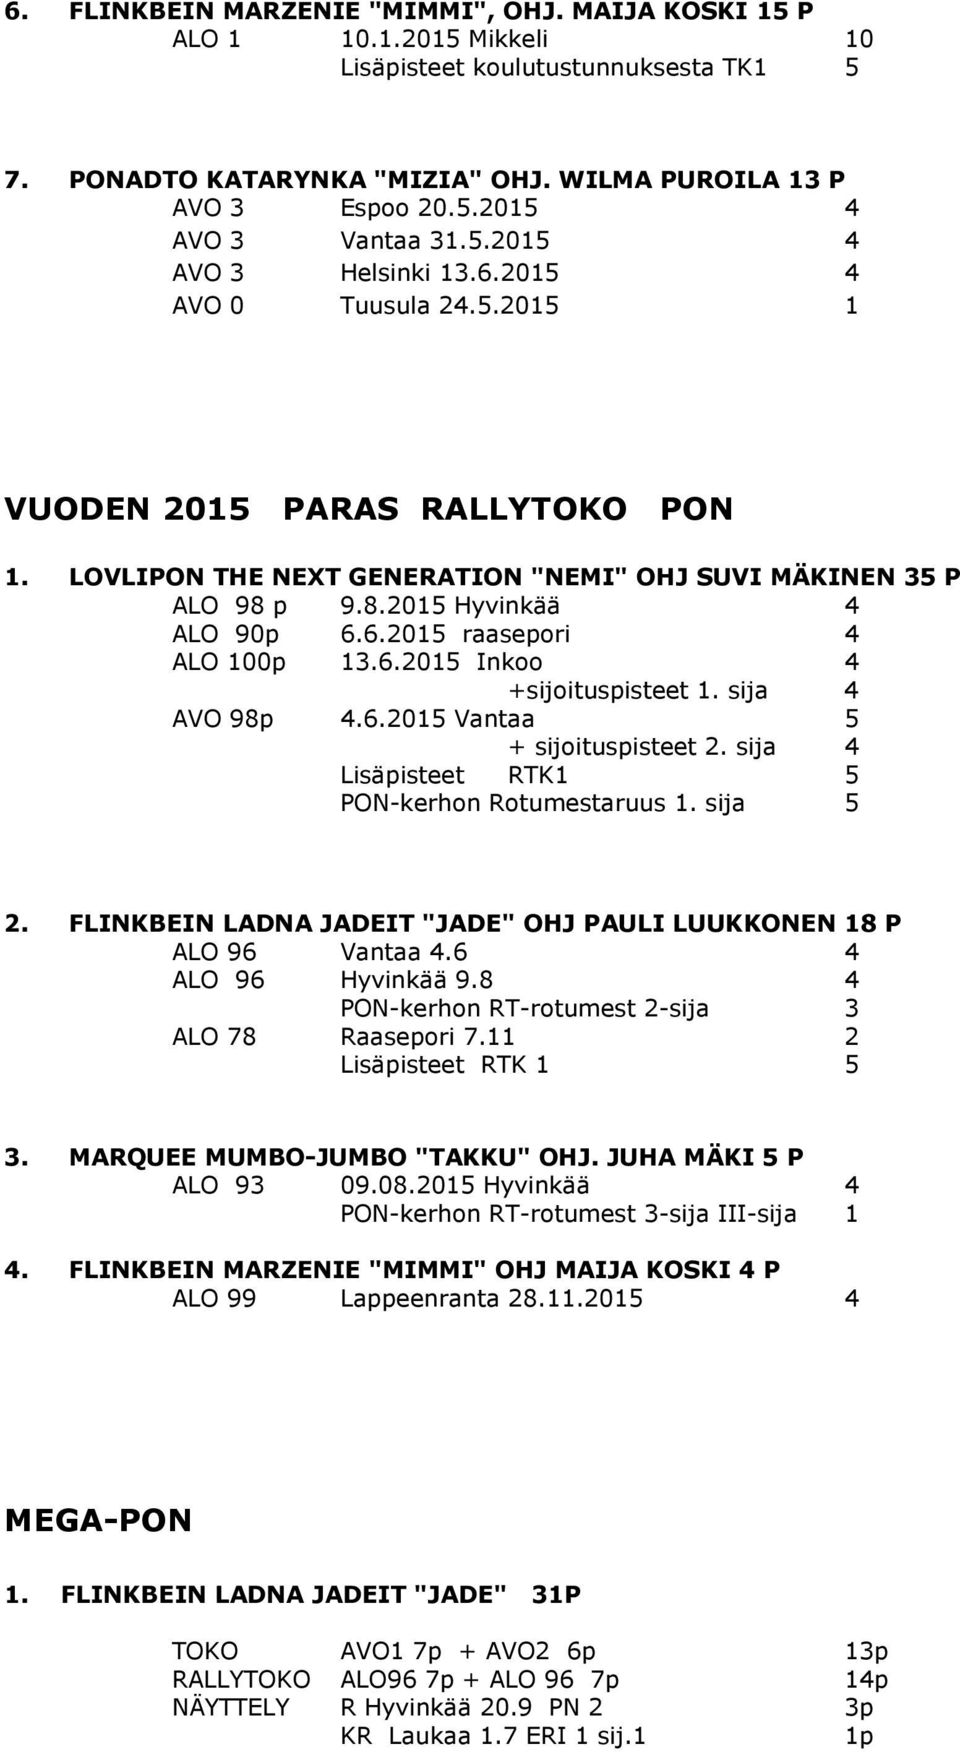 6.2015 Inkoo 4 +sijoituspisteet 1. sija 4 AVO 98p 4.6.2015 Vantaa 5 + sijoituspisteet 2. sija 4 Lisäpisteet RTK1 5 PON-kerhon Rotumestaruus 1. sija 5 2.